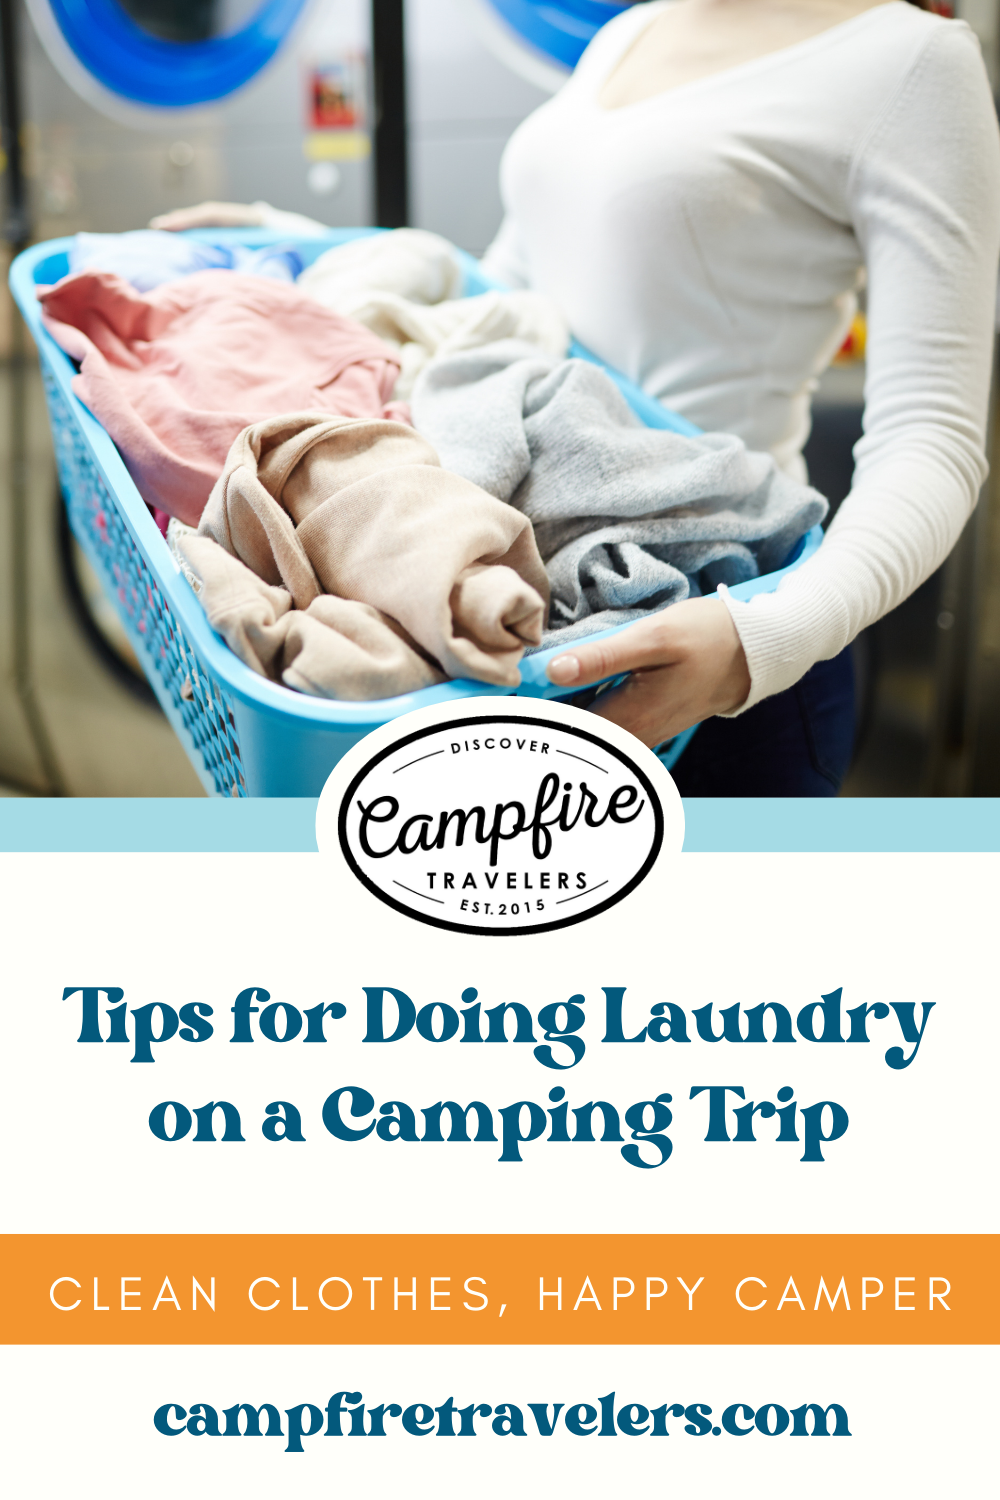 https://images.squarespace-cdn.com/content/v1/5e4ac5d6b0171c0e2324cc9d/335f2f36-abe4-46d1-9000-a7a65404d4b8/Tips+for+Doing+Laundry+on+a+Camping+Trip+CLEAN+CLOTHES%2C+HAPPY+CAMPER+campfiretravelers.com.png